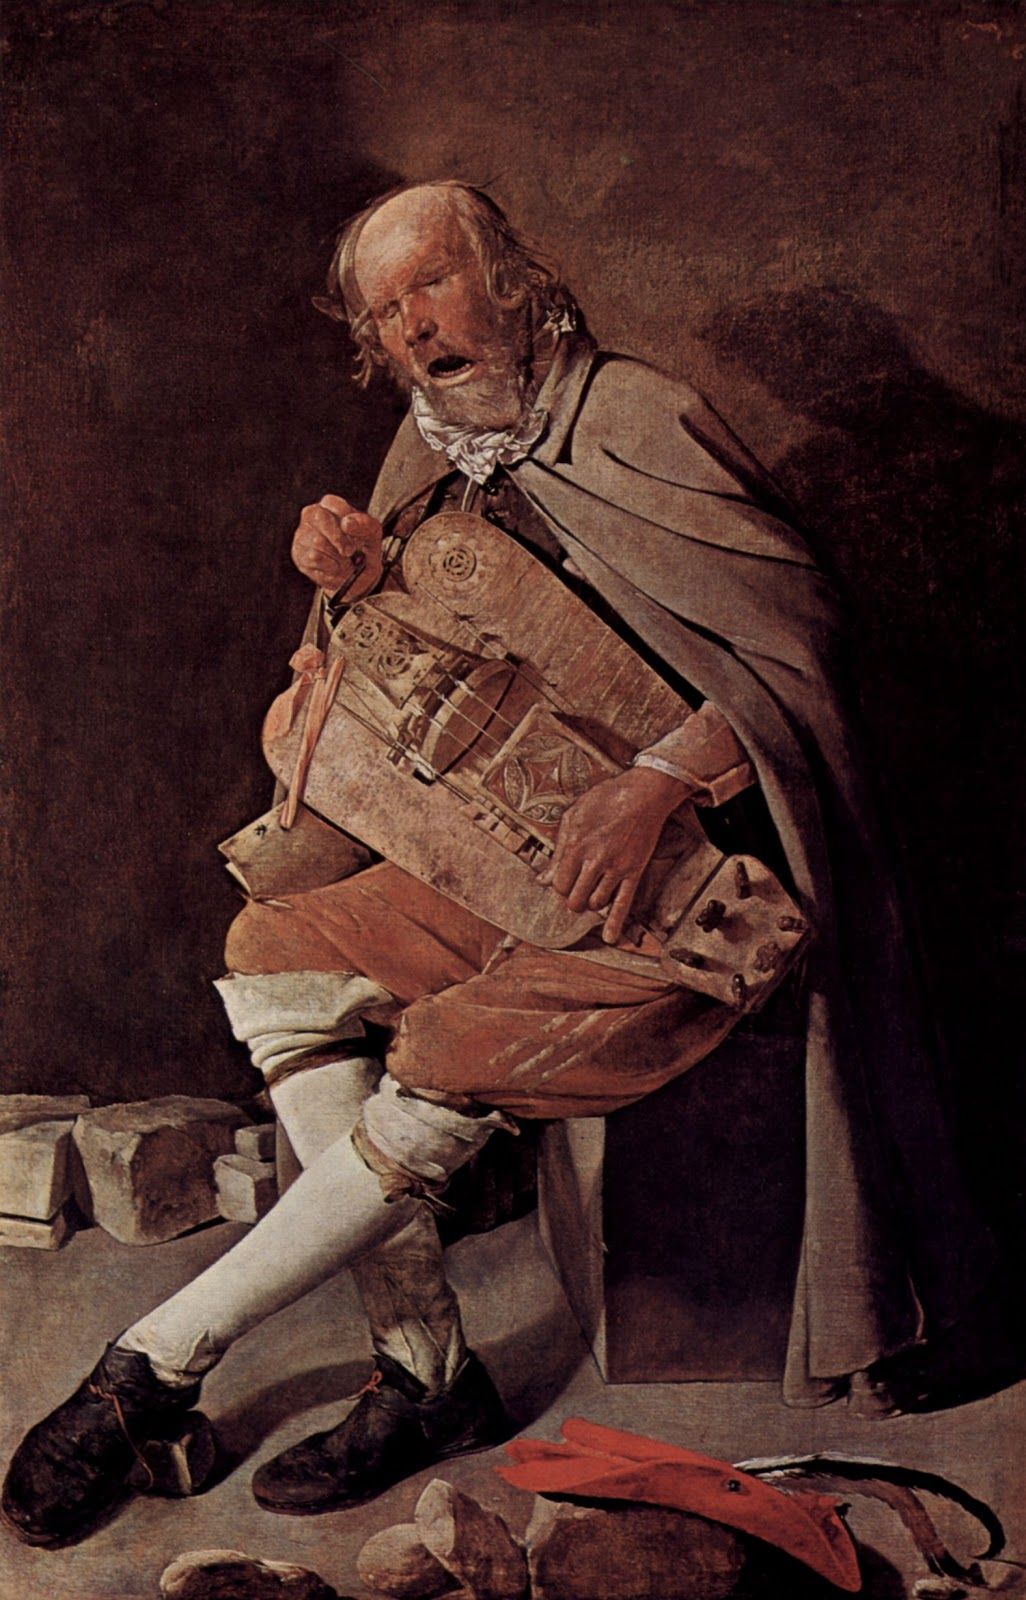 Le joueur de vielle, peinture de Georges de la Tour, env. 1635, 162 x 105 cm, Musée des Beaux-Arts, Nantes